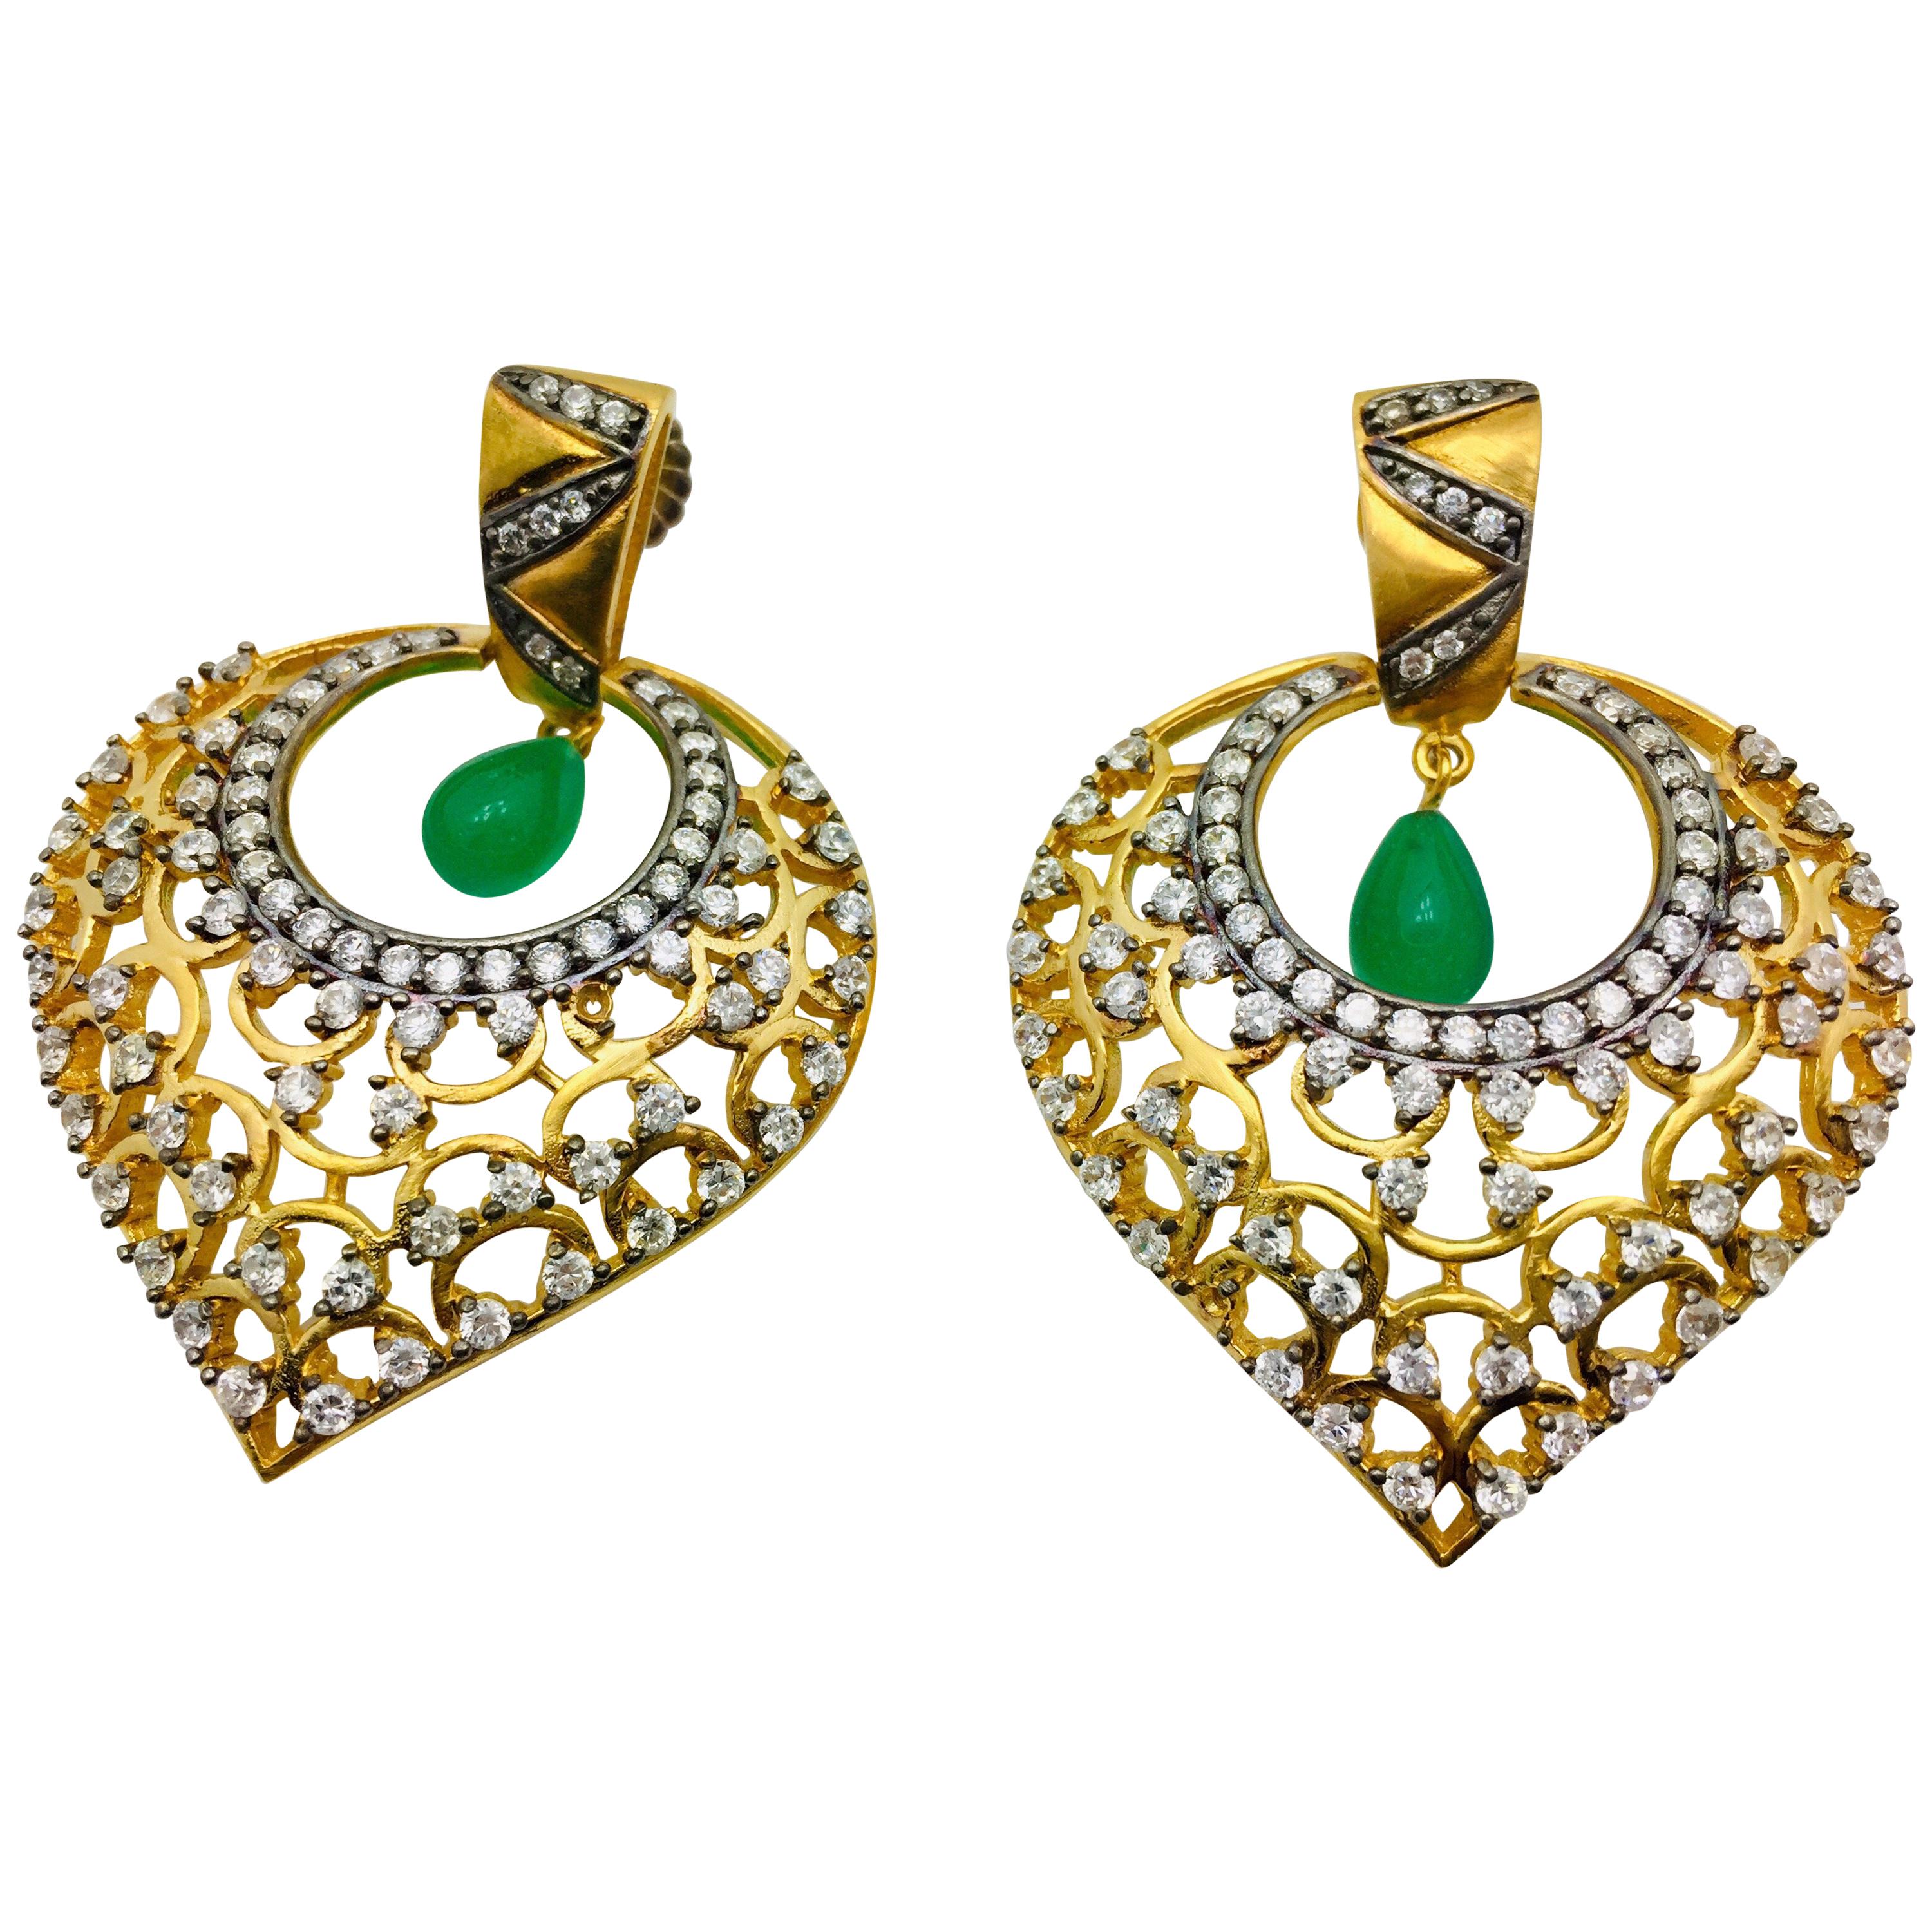 MEGHNA JEWELS Leaf Filigree Cubic Zircon Faux Emerald Earrings 